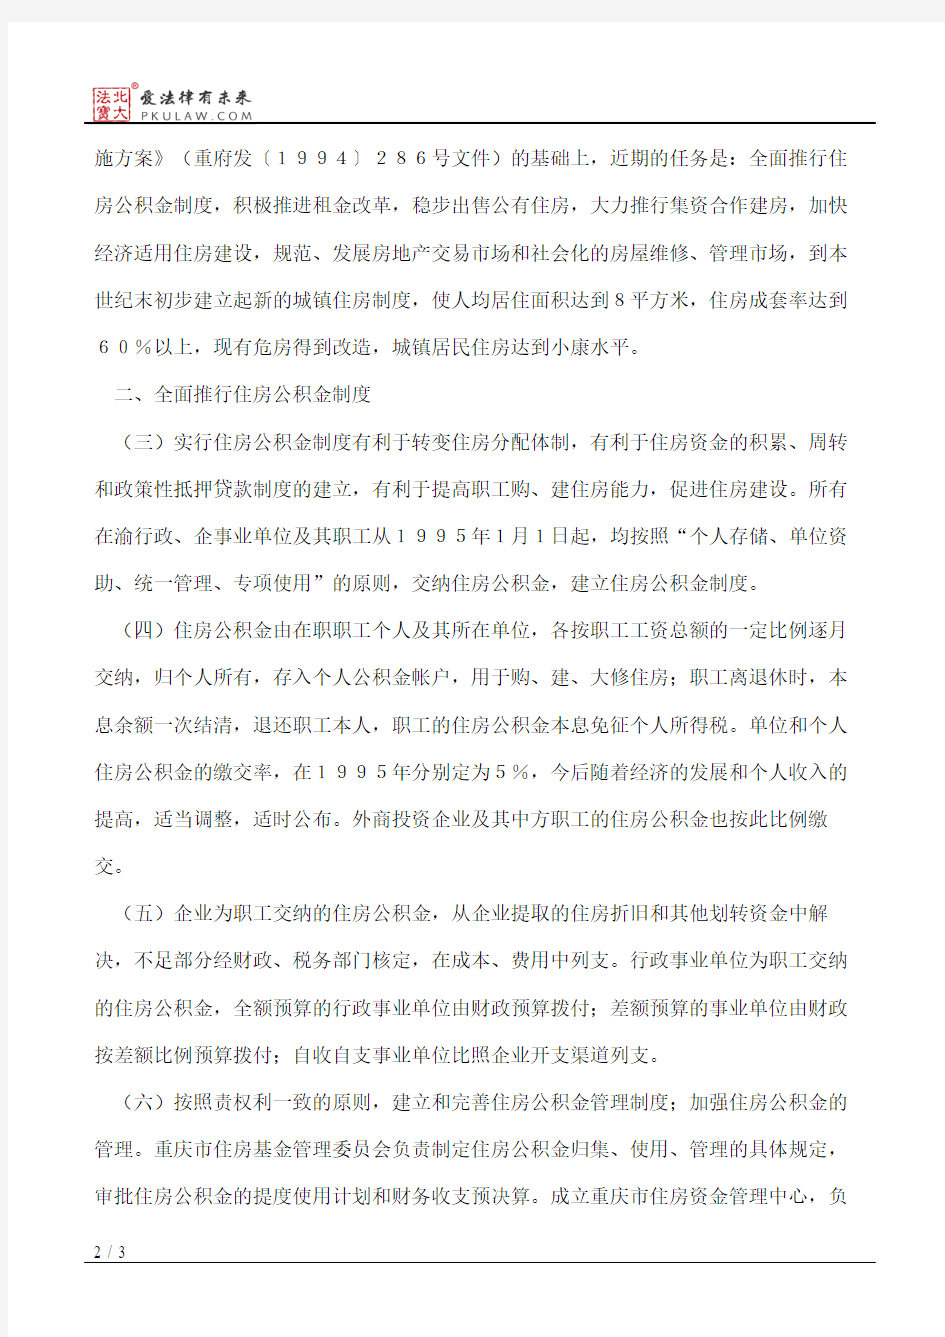 重庆市人民政府关于深化城镇住房制度改革的决定